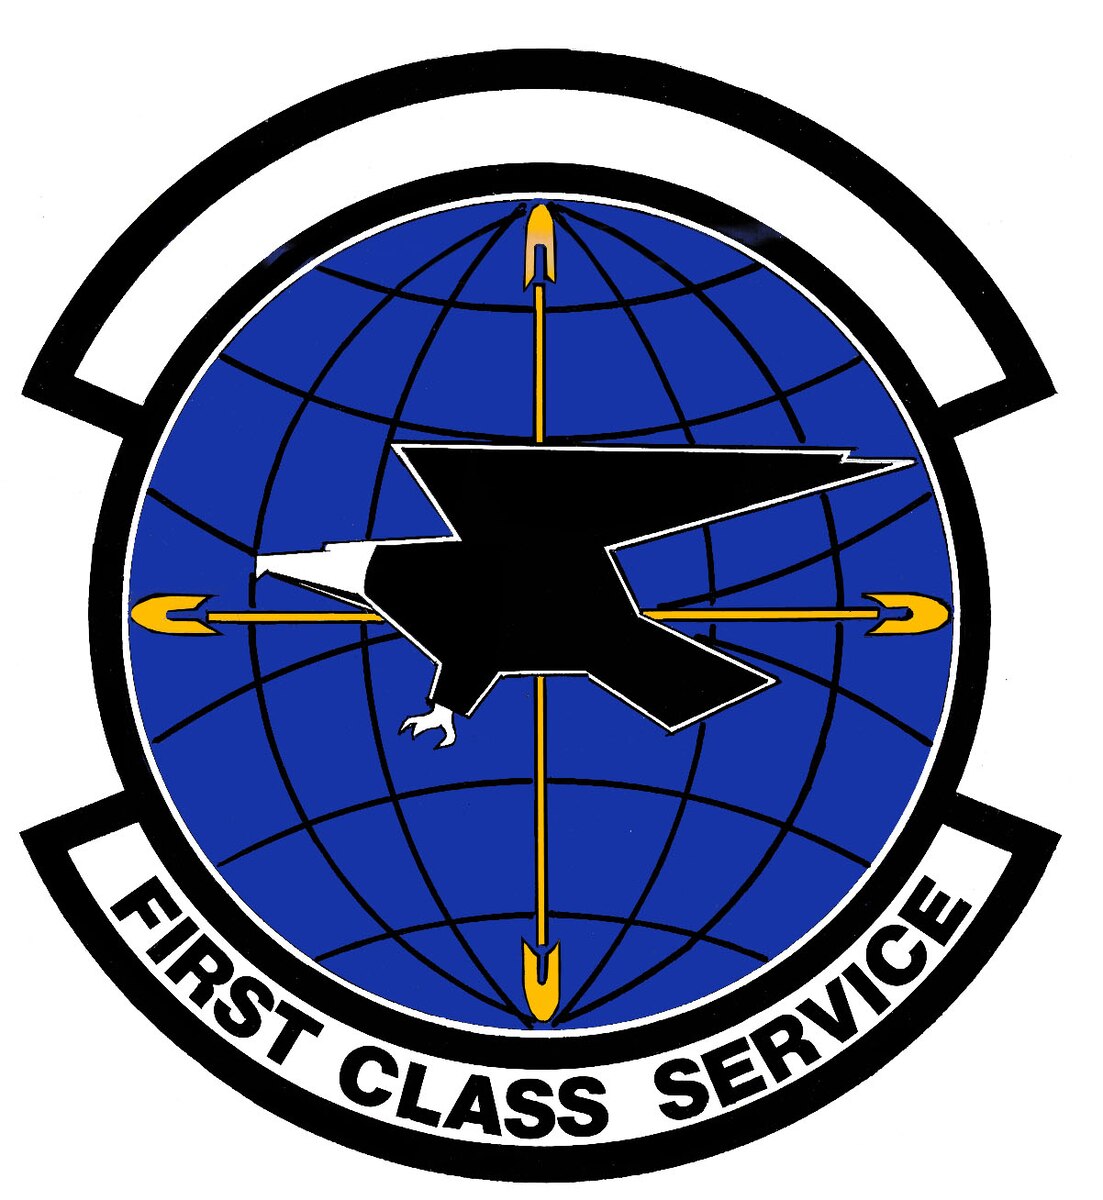 FileUS Air Forces in Europe Air Postal Squadron, US Air Force.jpg